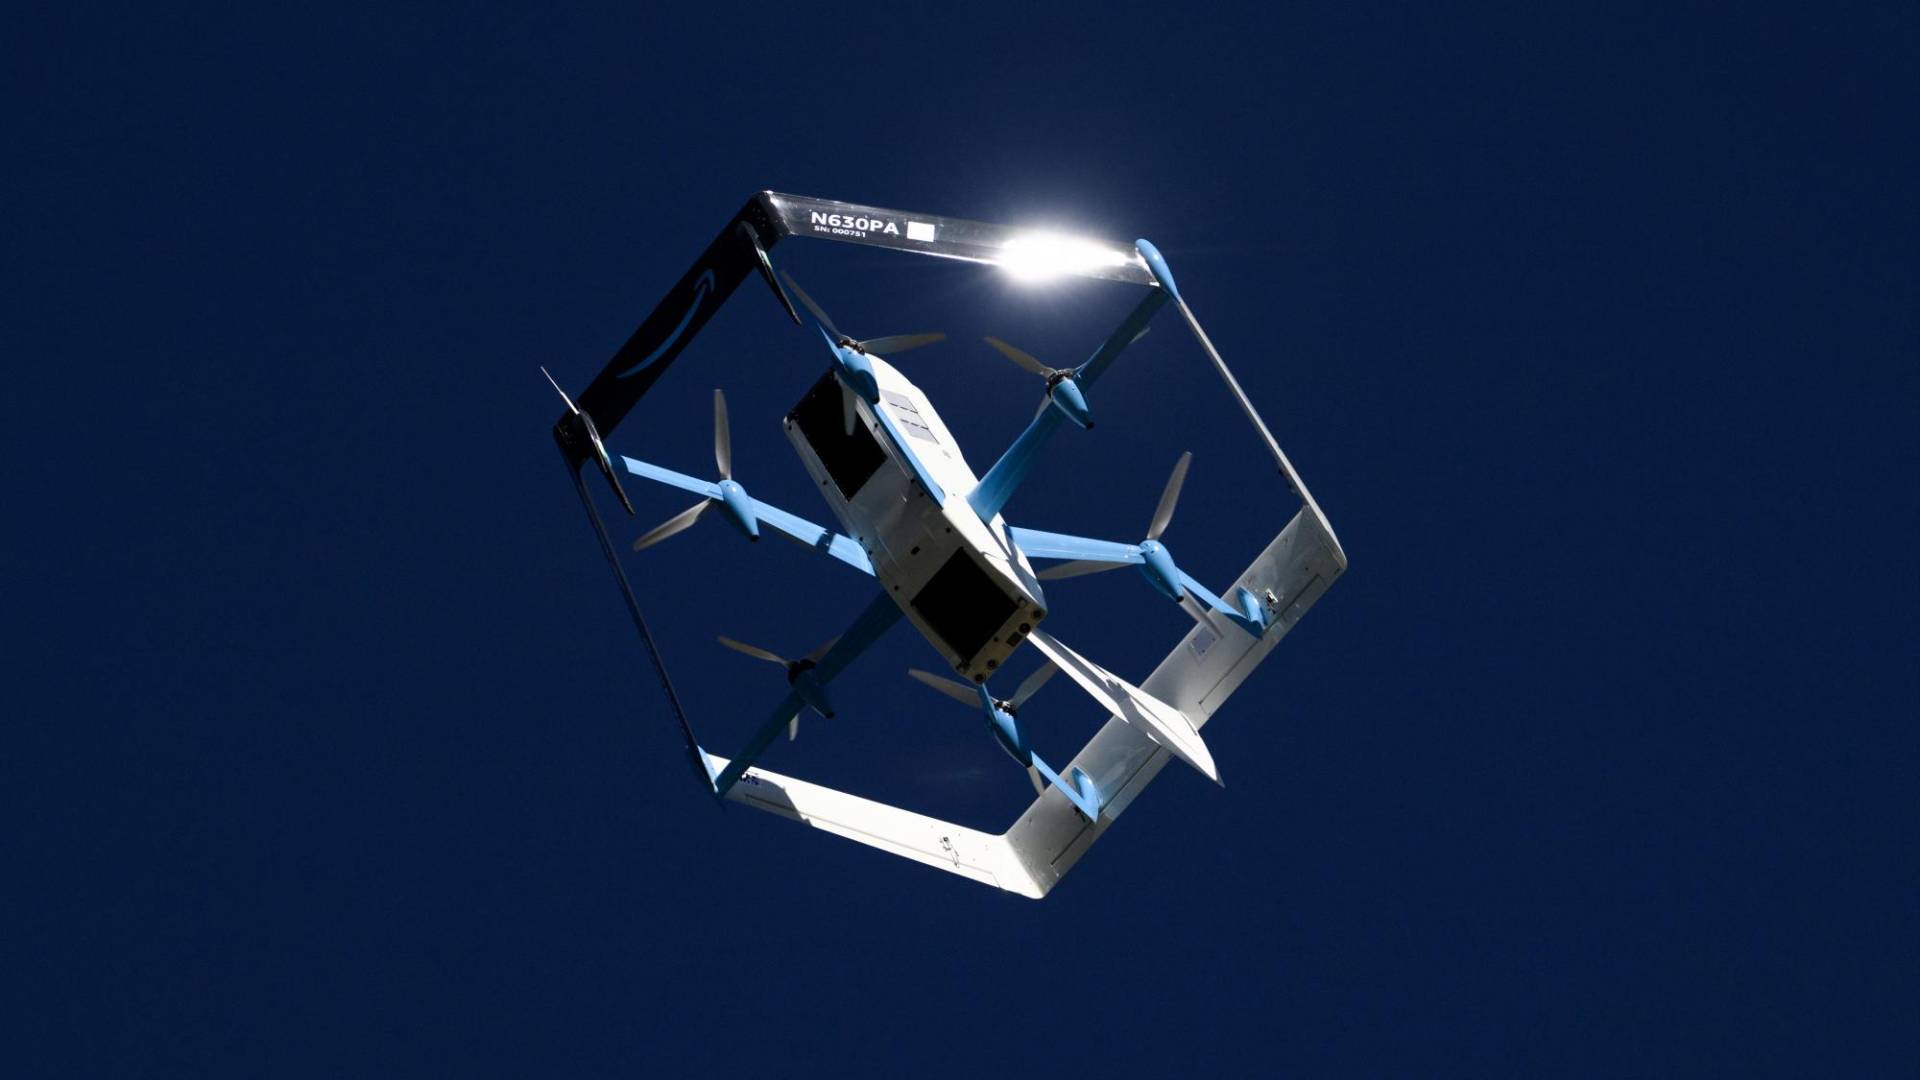 $!Los drones de Amazon dejan caer entregas desde cerca de 4 metros de altura y no pueden volar con mucho calor o viento.